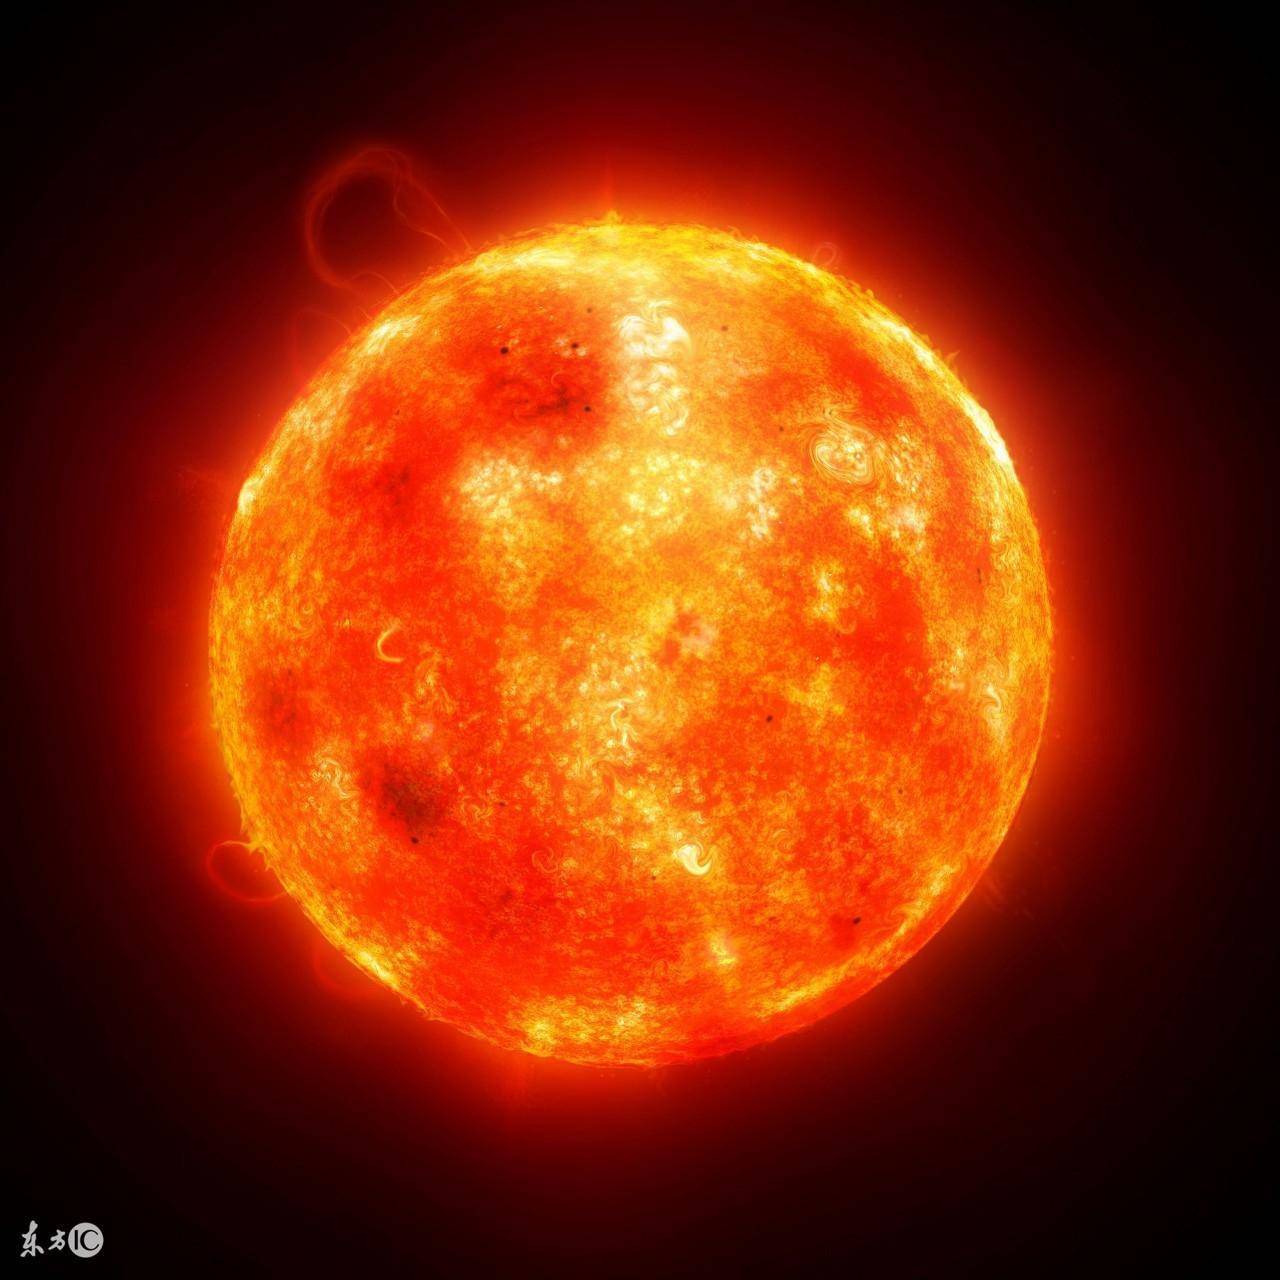 太阳这颗大火球燃烧的是什么?还能撑多久?